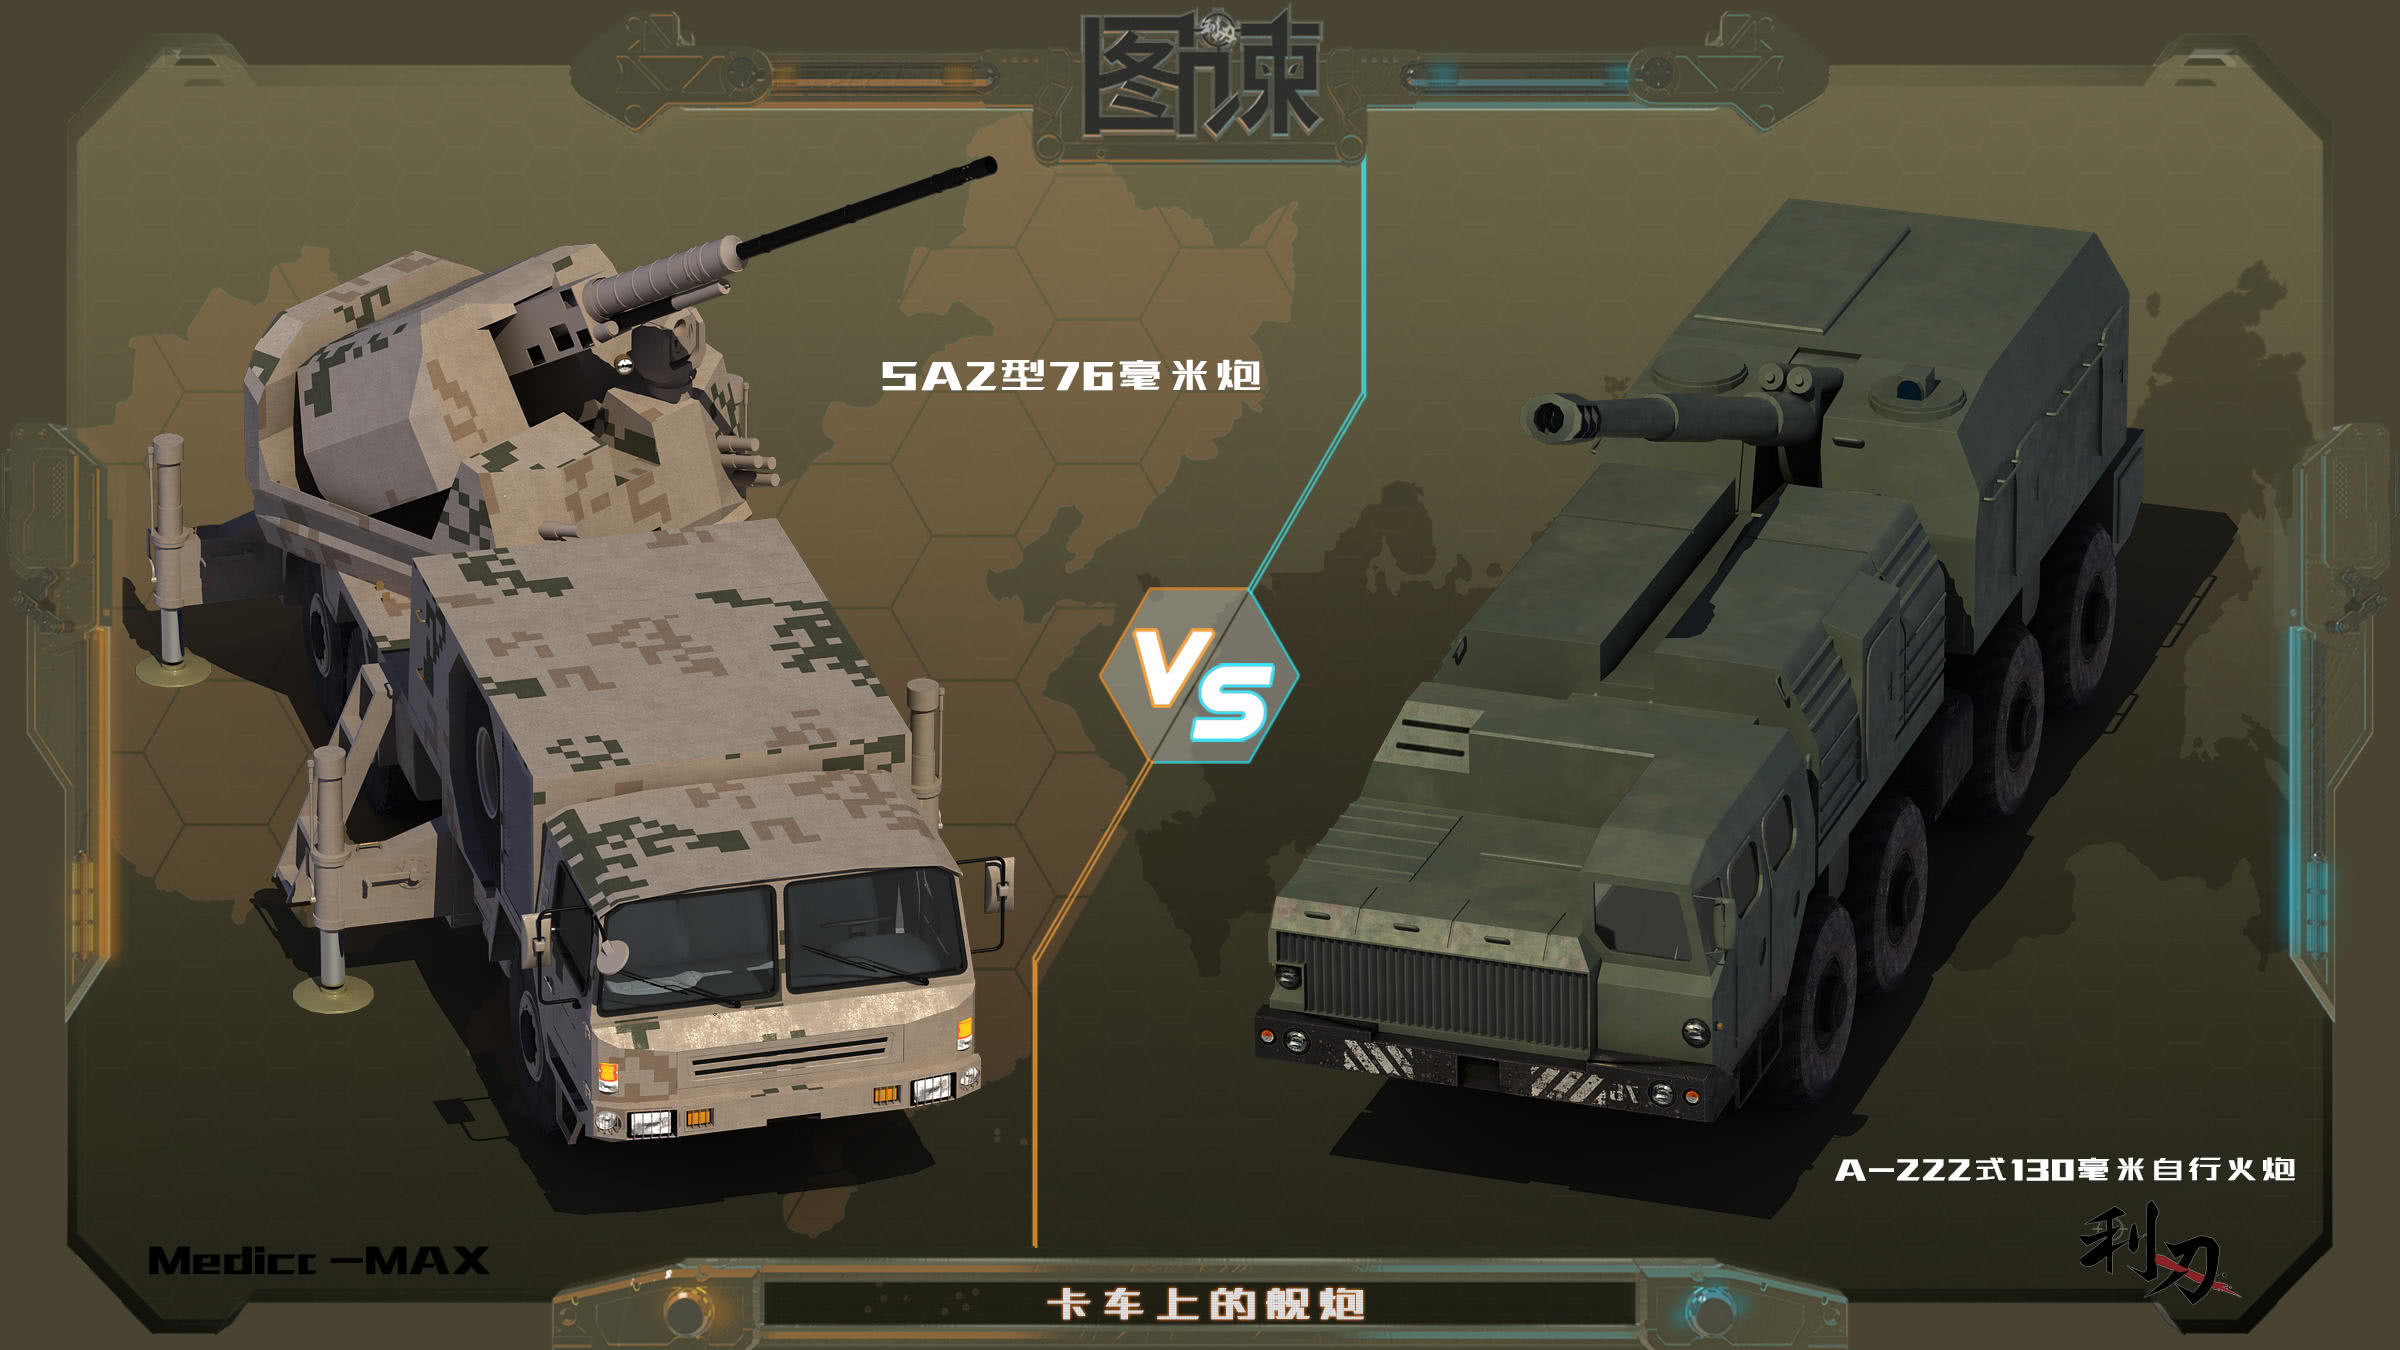 图谏cg:054a的舰炮安在卡车上!中国军工的想象力够强大